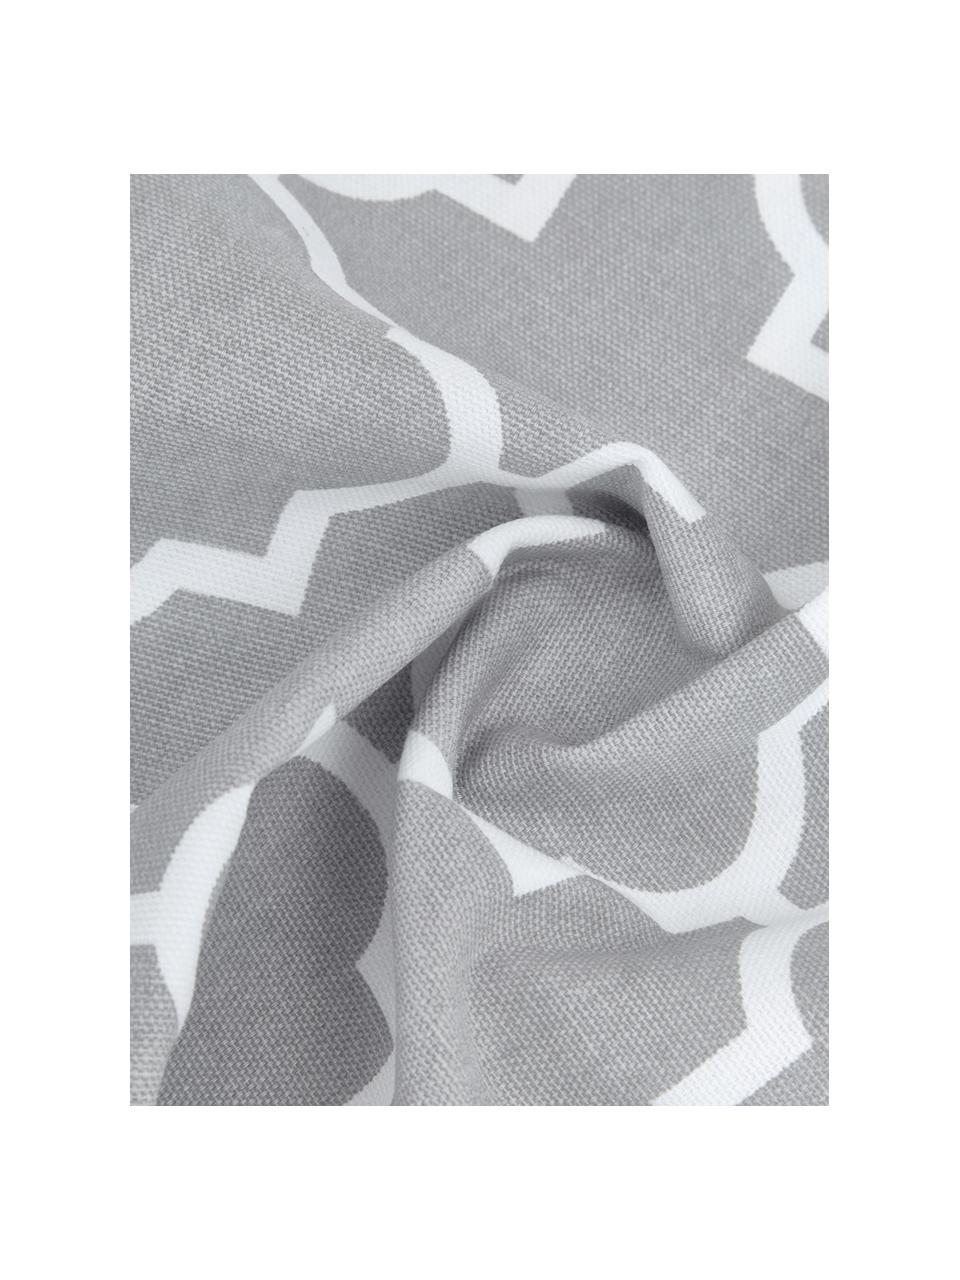 Kussenhoes Lana in grijs met grafisch patroon, 100% katoen, Grijs, wit, B 45 x L 45 cm